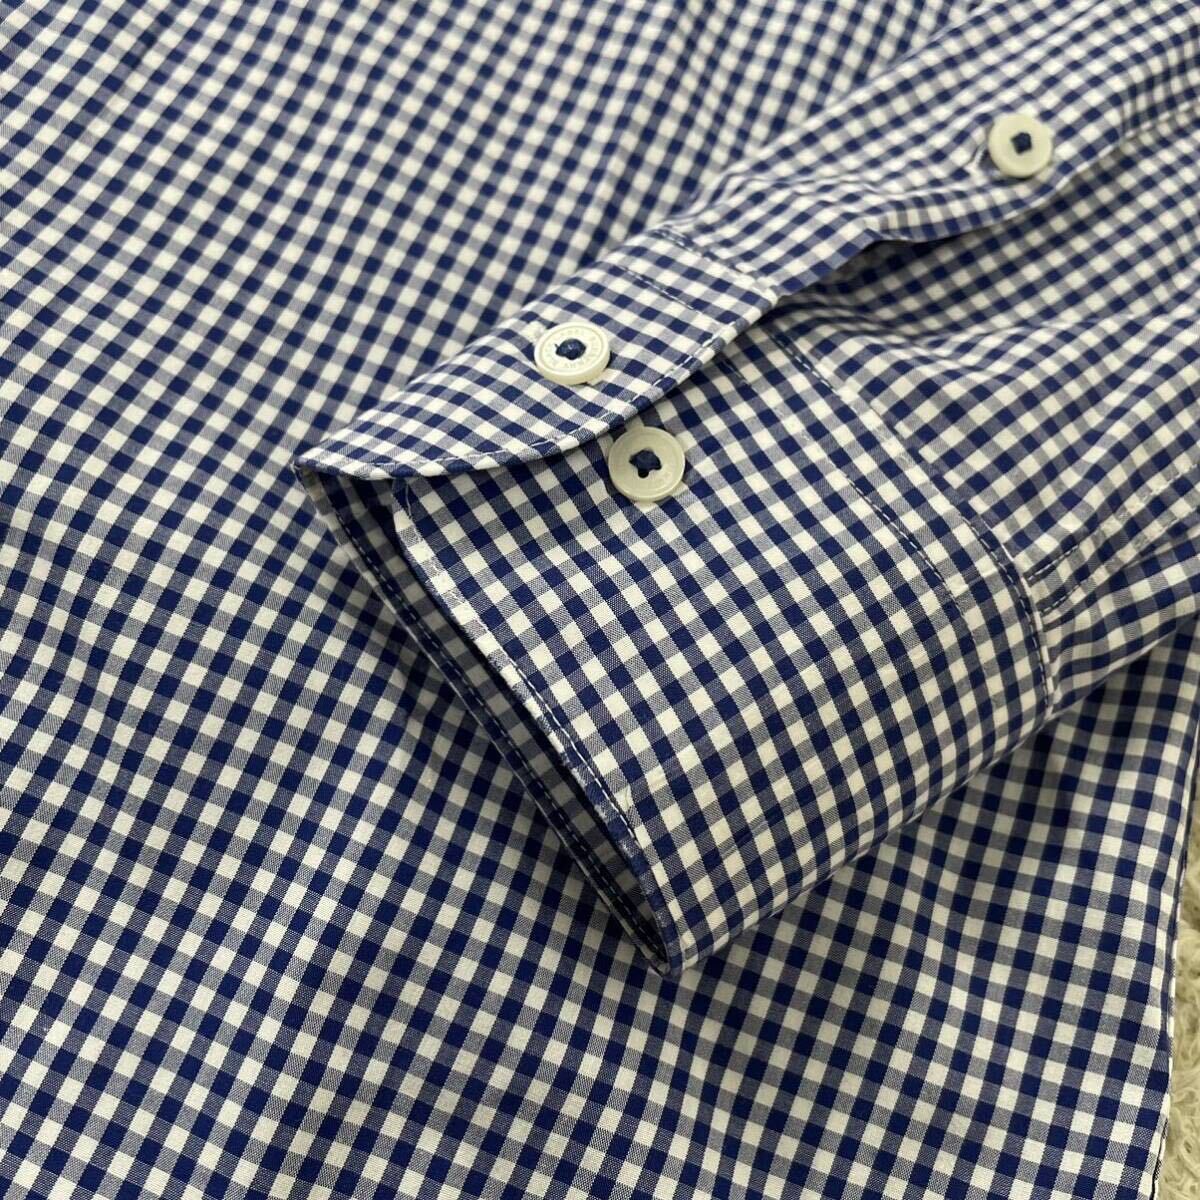 1 иен ~ [ не использовался класс!] Burberry Black Label BURBERRYBLACKLABEL рубашка мужской длинный рукав серебристый жевательная резинка проверка шланг Logo хлопок 40 L